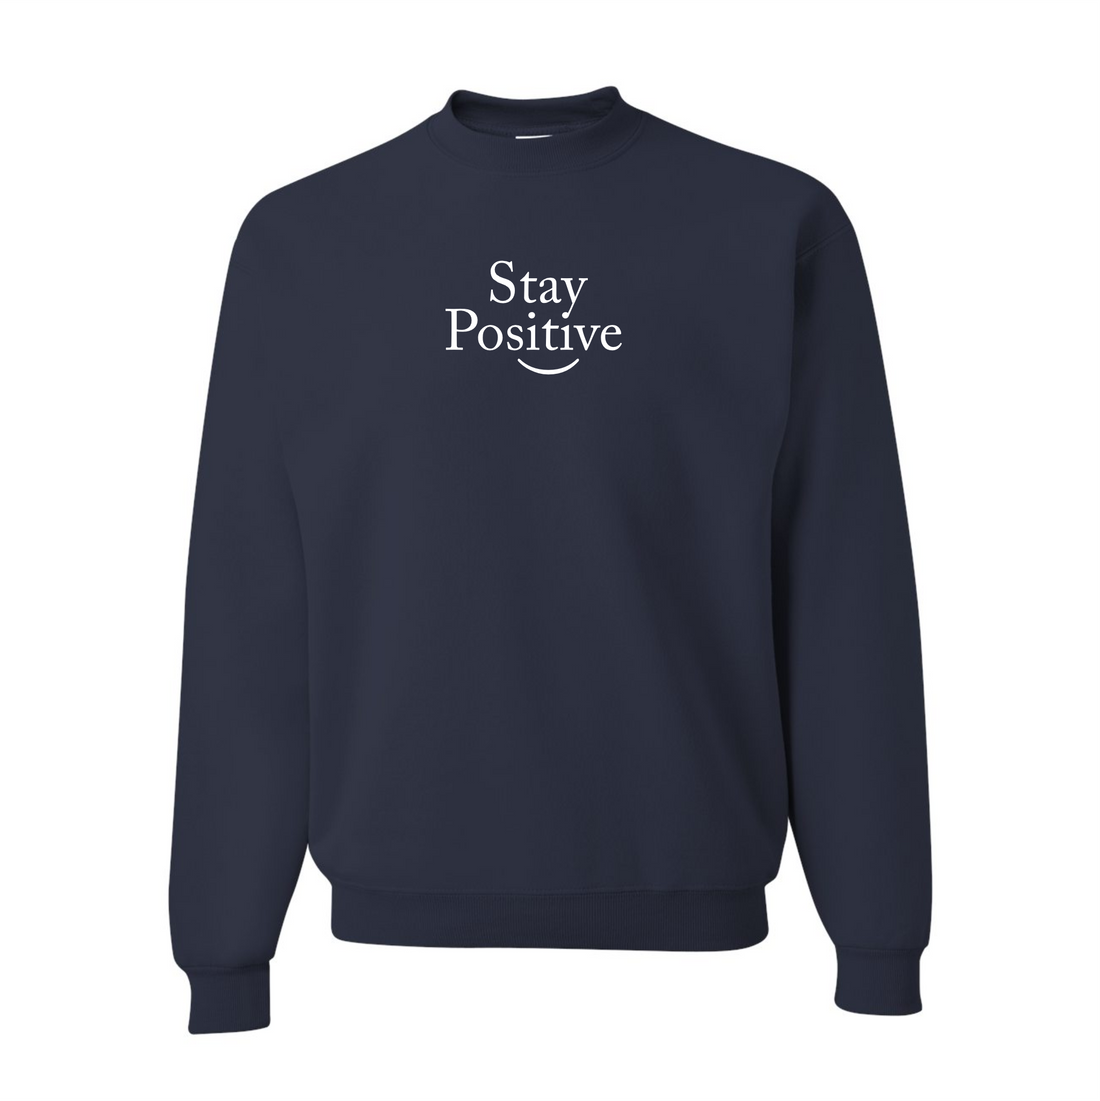 Stay Positive Crewneck Sweatshirt